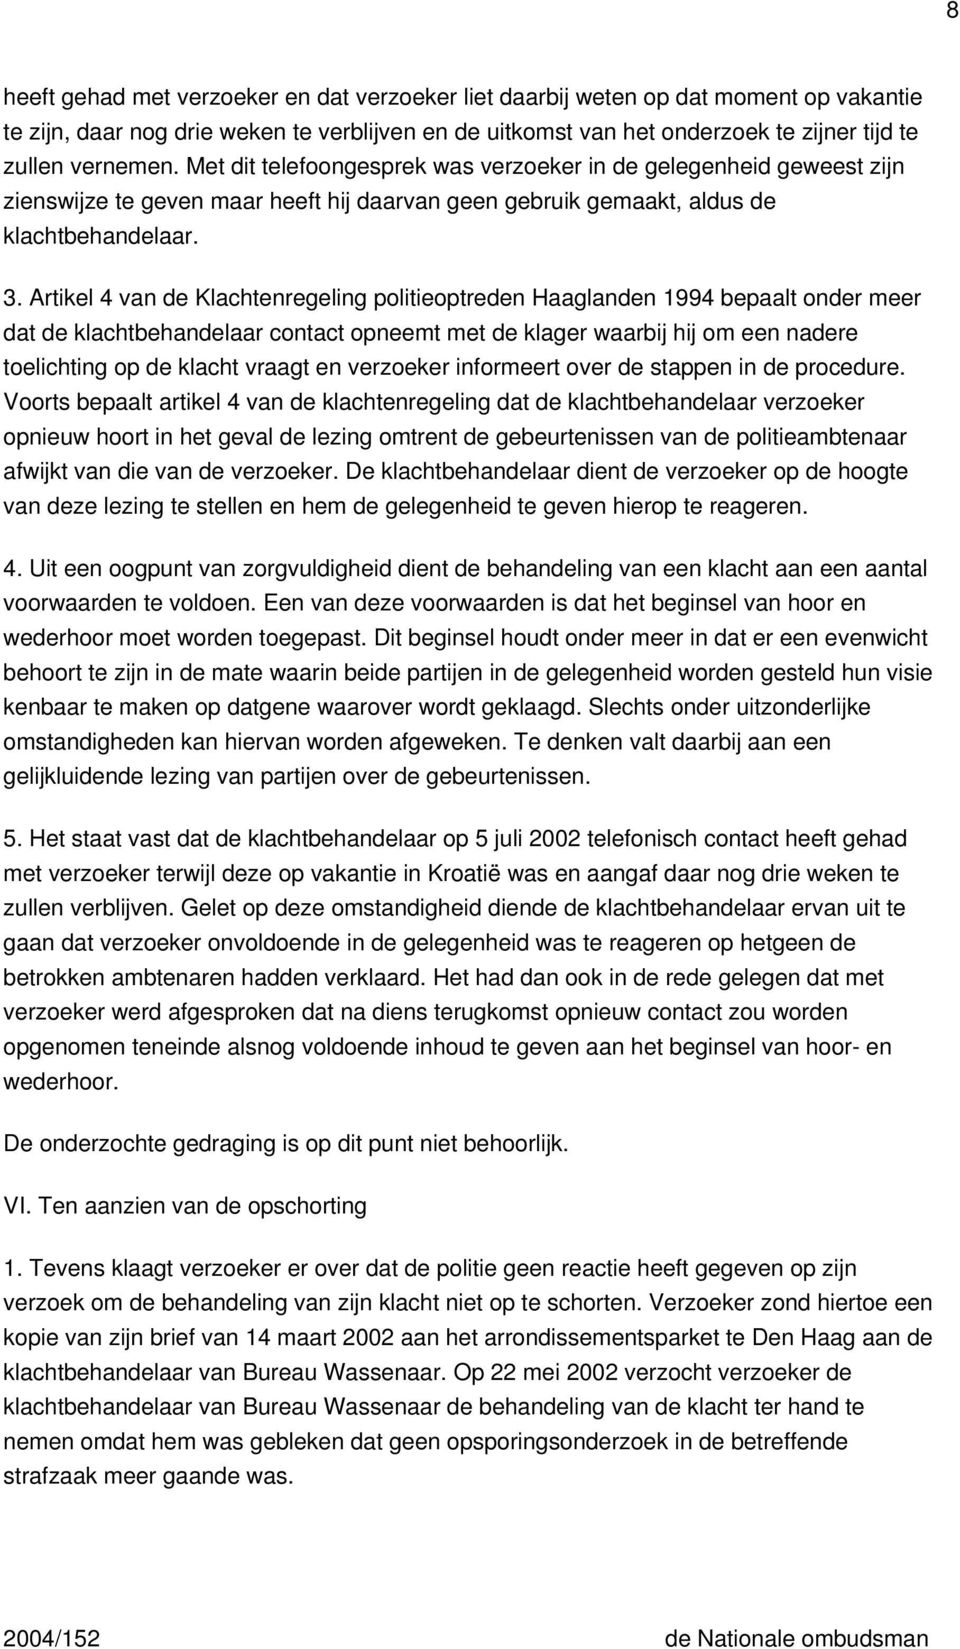 Artikel 4 van de Klachtenregeling politieoptreden Haaglanden 1994 bepaalt onder meer dat de klachtbehandelaar contact opneemt met de klager waarbij hij om een nadere toelichting op de klacht vraagt